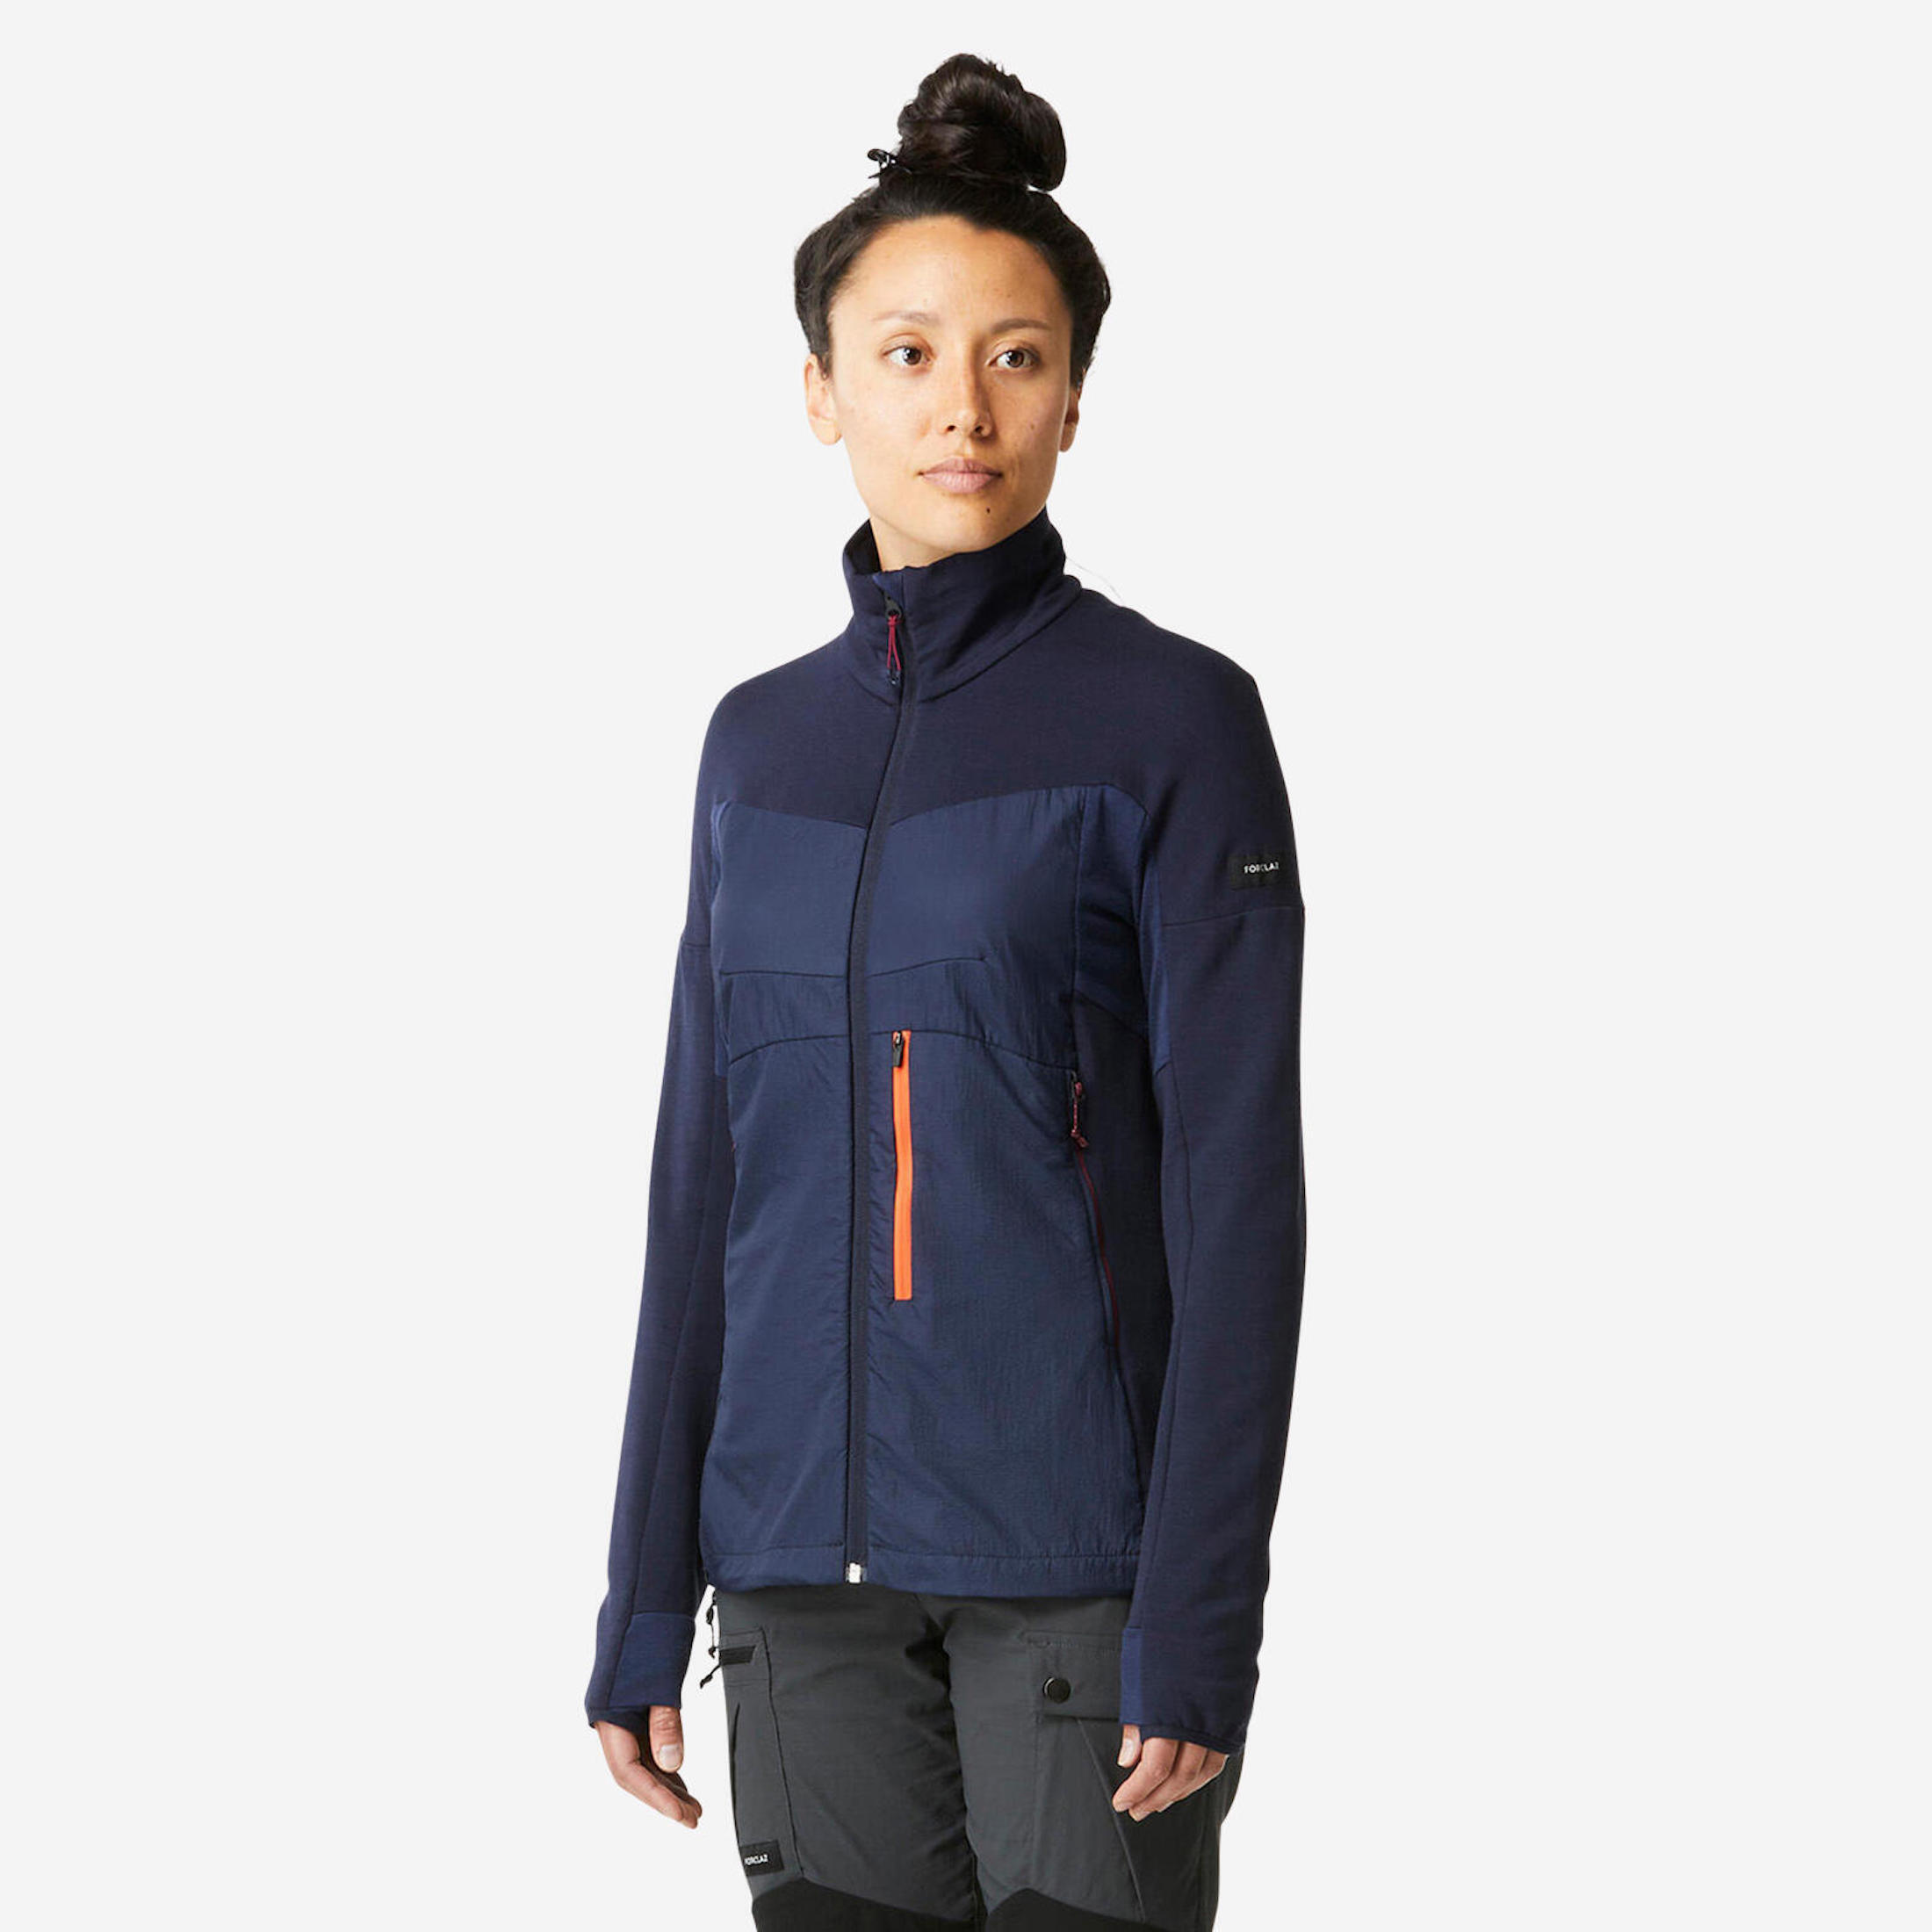 FORCLAZ Women's Merino Wool Trekking Jacket Liner - MT900